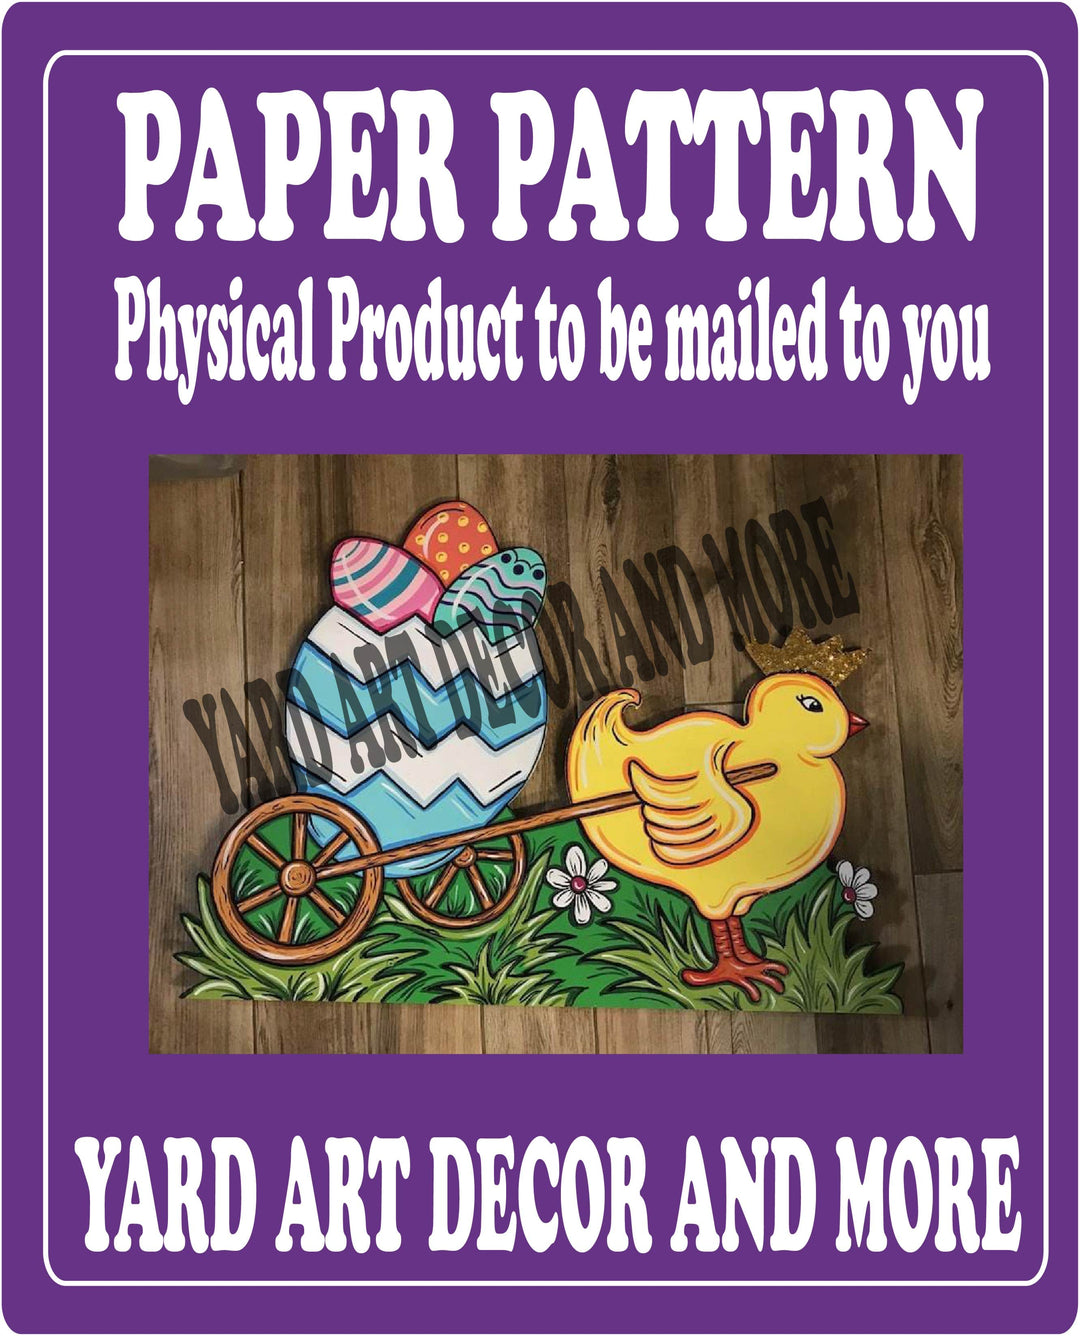 Chicken Pulls Wagon Paper Pattern